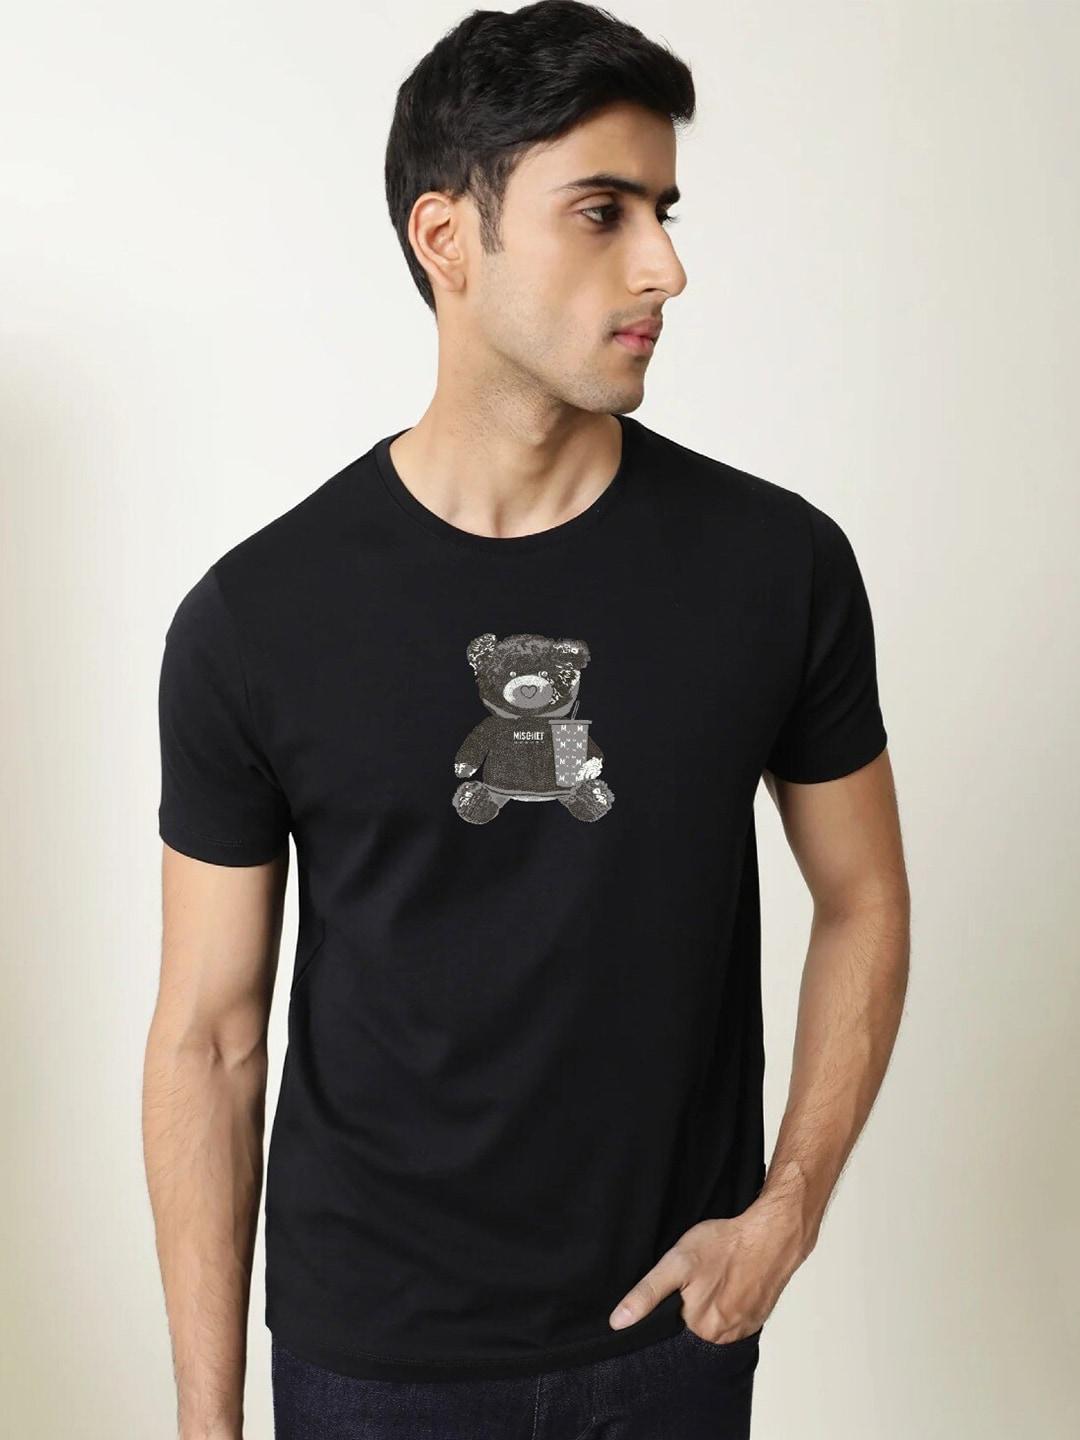 mischief monkey men black printed v-neck pure cotton applique t-shirt